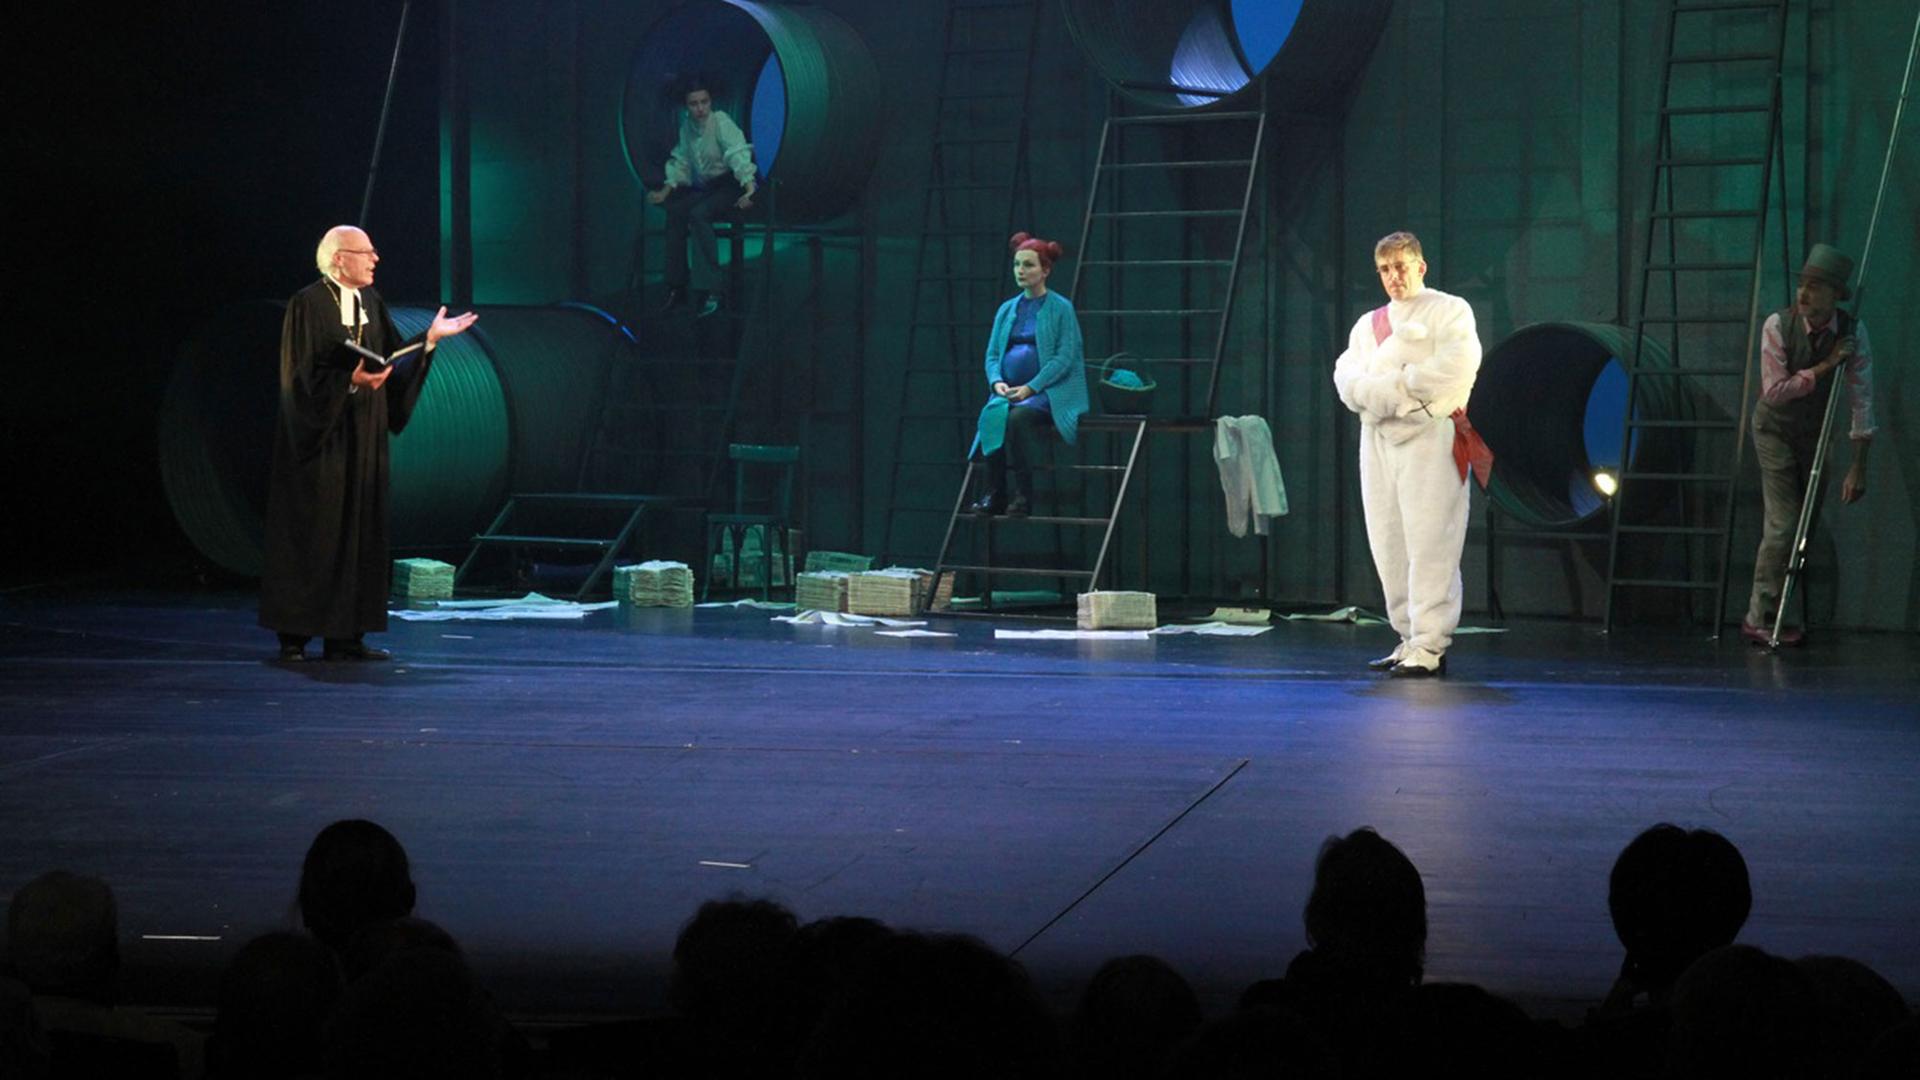 Ein evangelischer Pfarrer steht im Talar und einem Buch in der Hand auf einer Theaterbühne. Auf der in blaues und grünes Licht getauchten Bühne sind vier Schauspieler in Kostümen vor einer Wand mit Bullaugen und Leitern zu sehen.